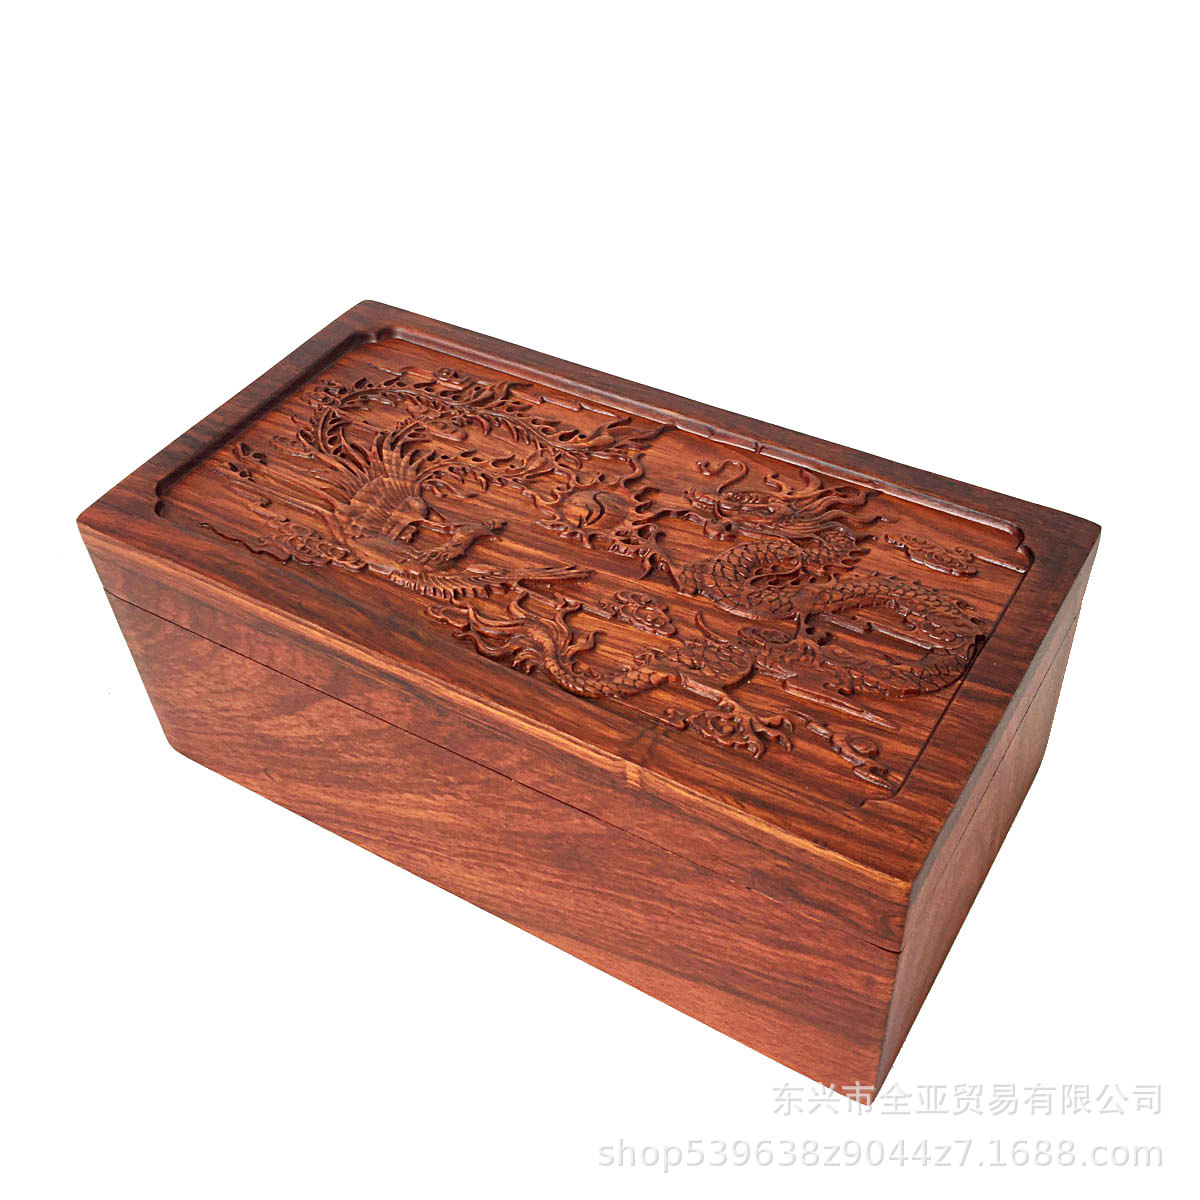 越南木质盒龙凤首饰盒红木花梨木珠宝收纳盒雕花首饰盒实木项链盒